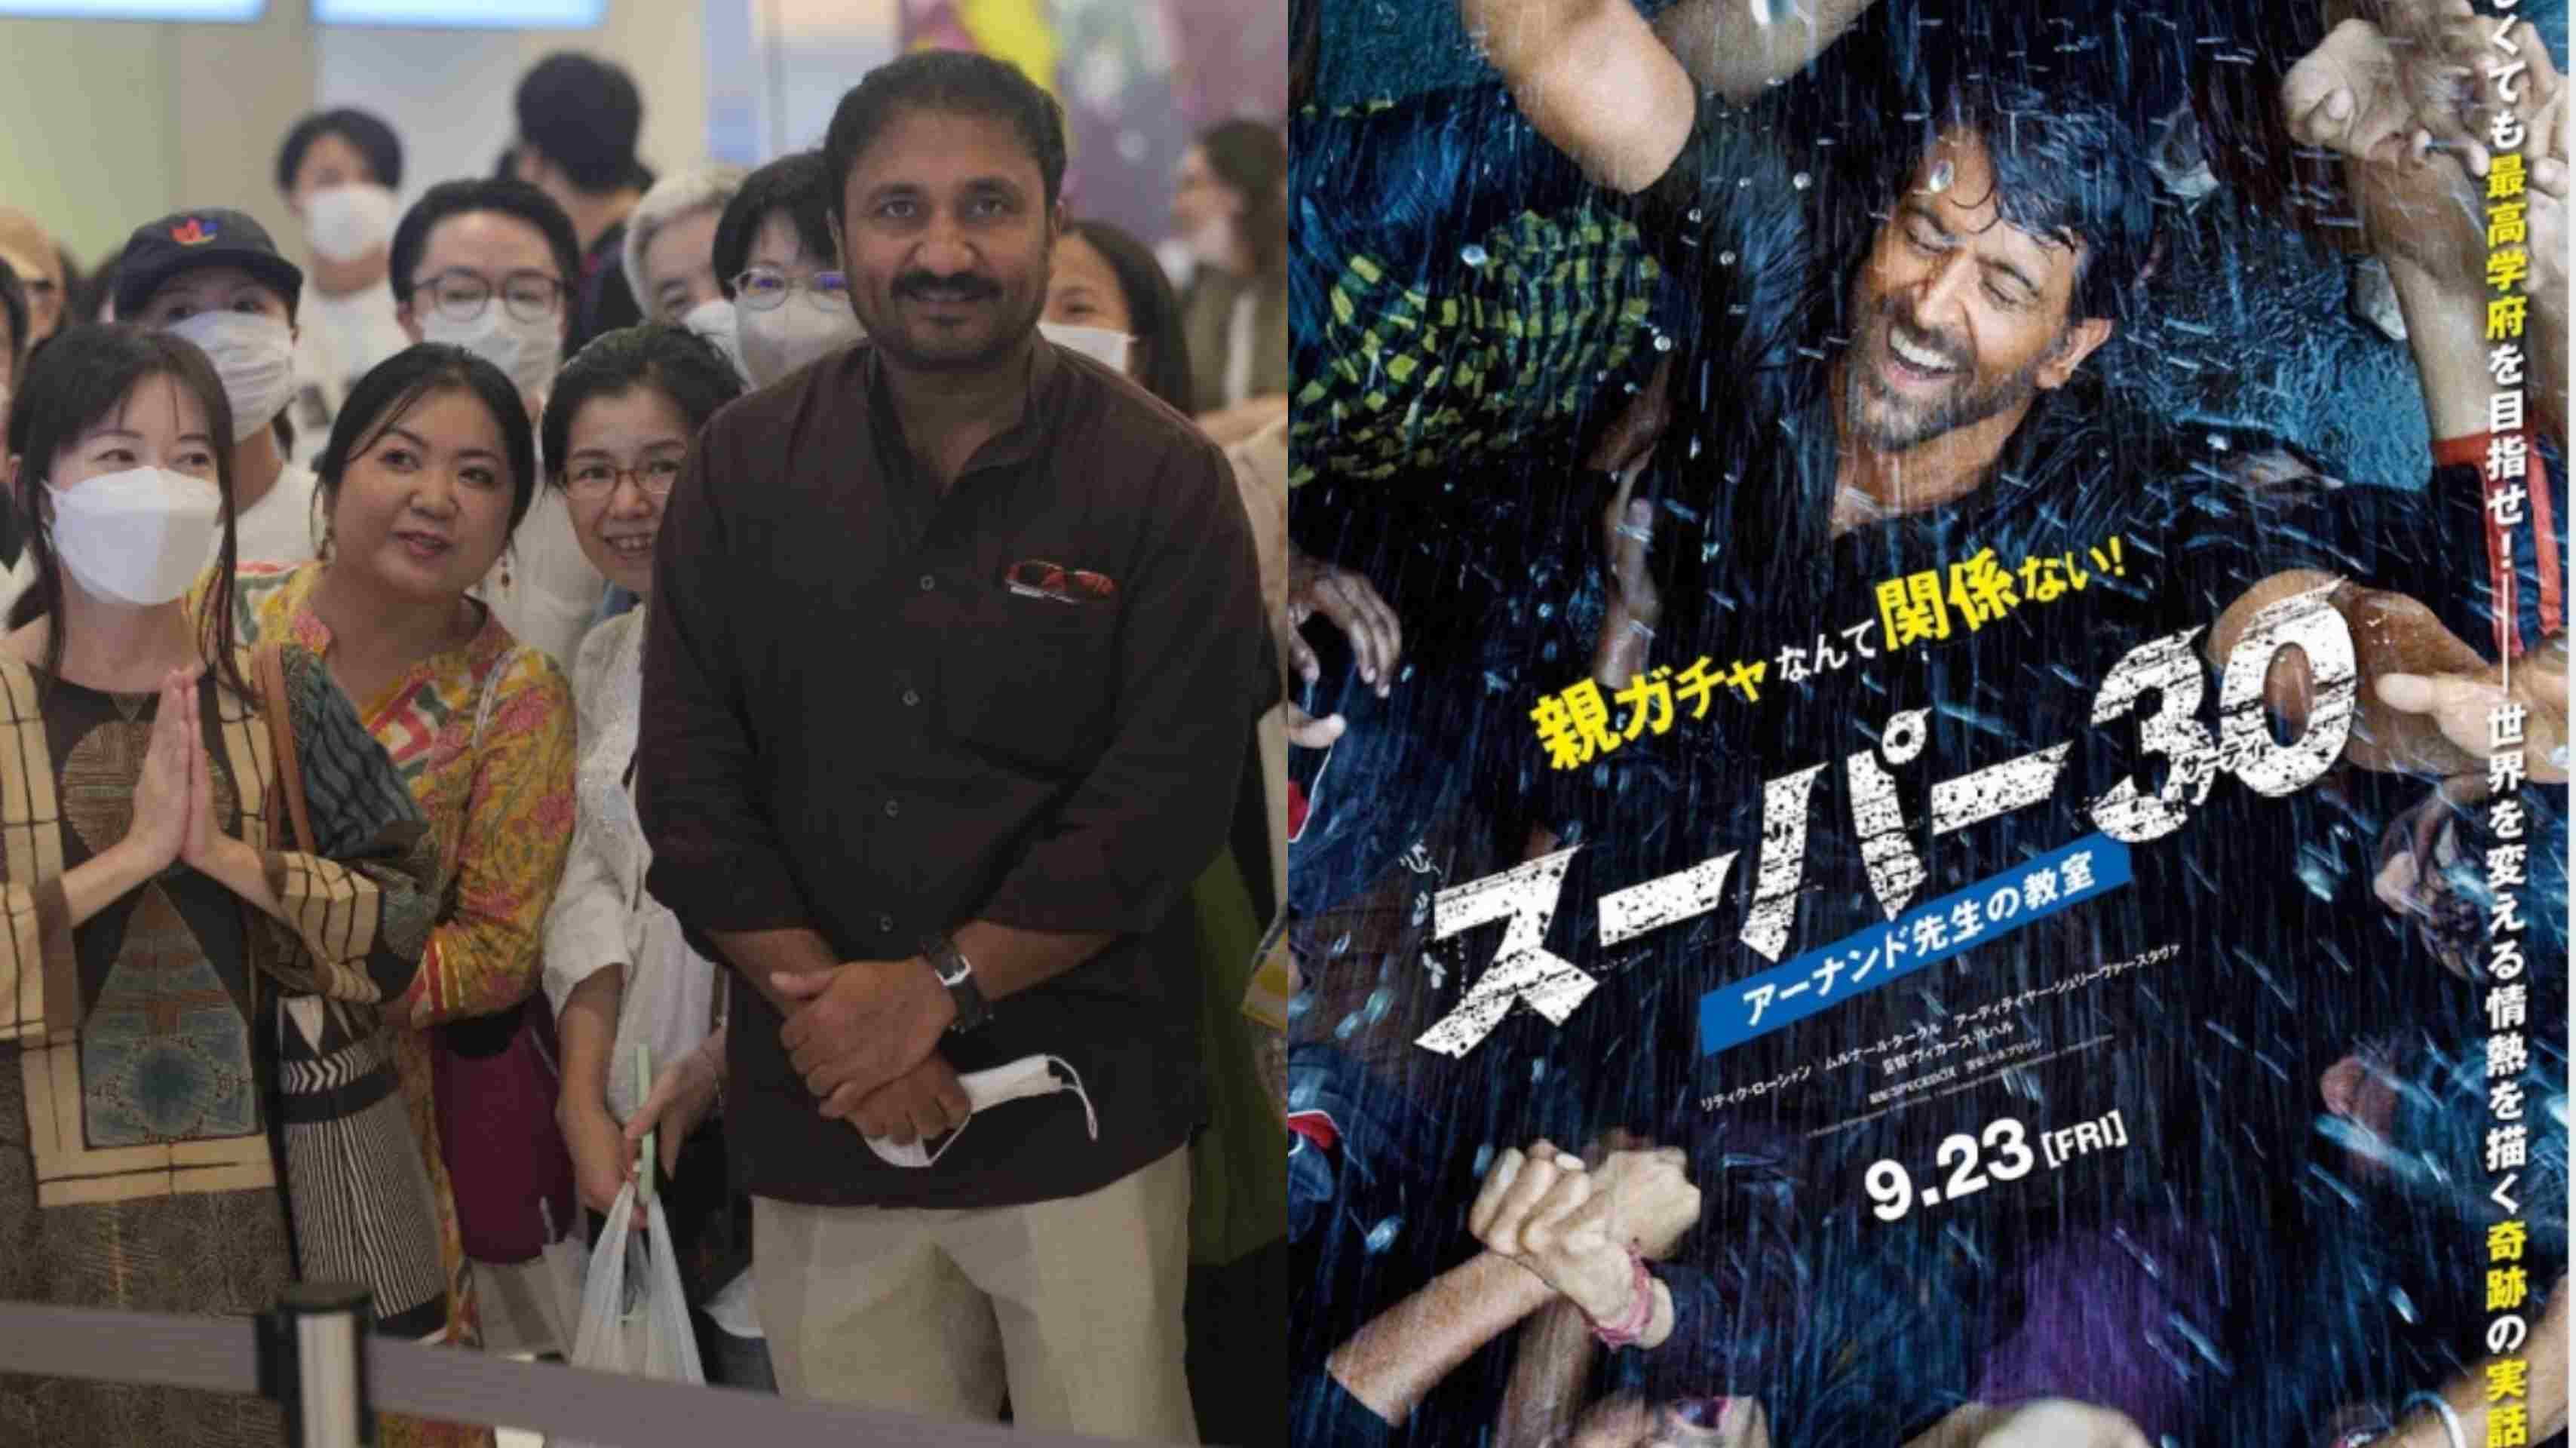 सुपर 30 को जापान में जबरदस्त सफलता, गणितज्ञ आनंद कुमार रहे टोक्यो प्रीमियर में मौजूद